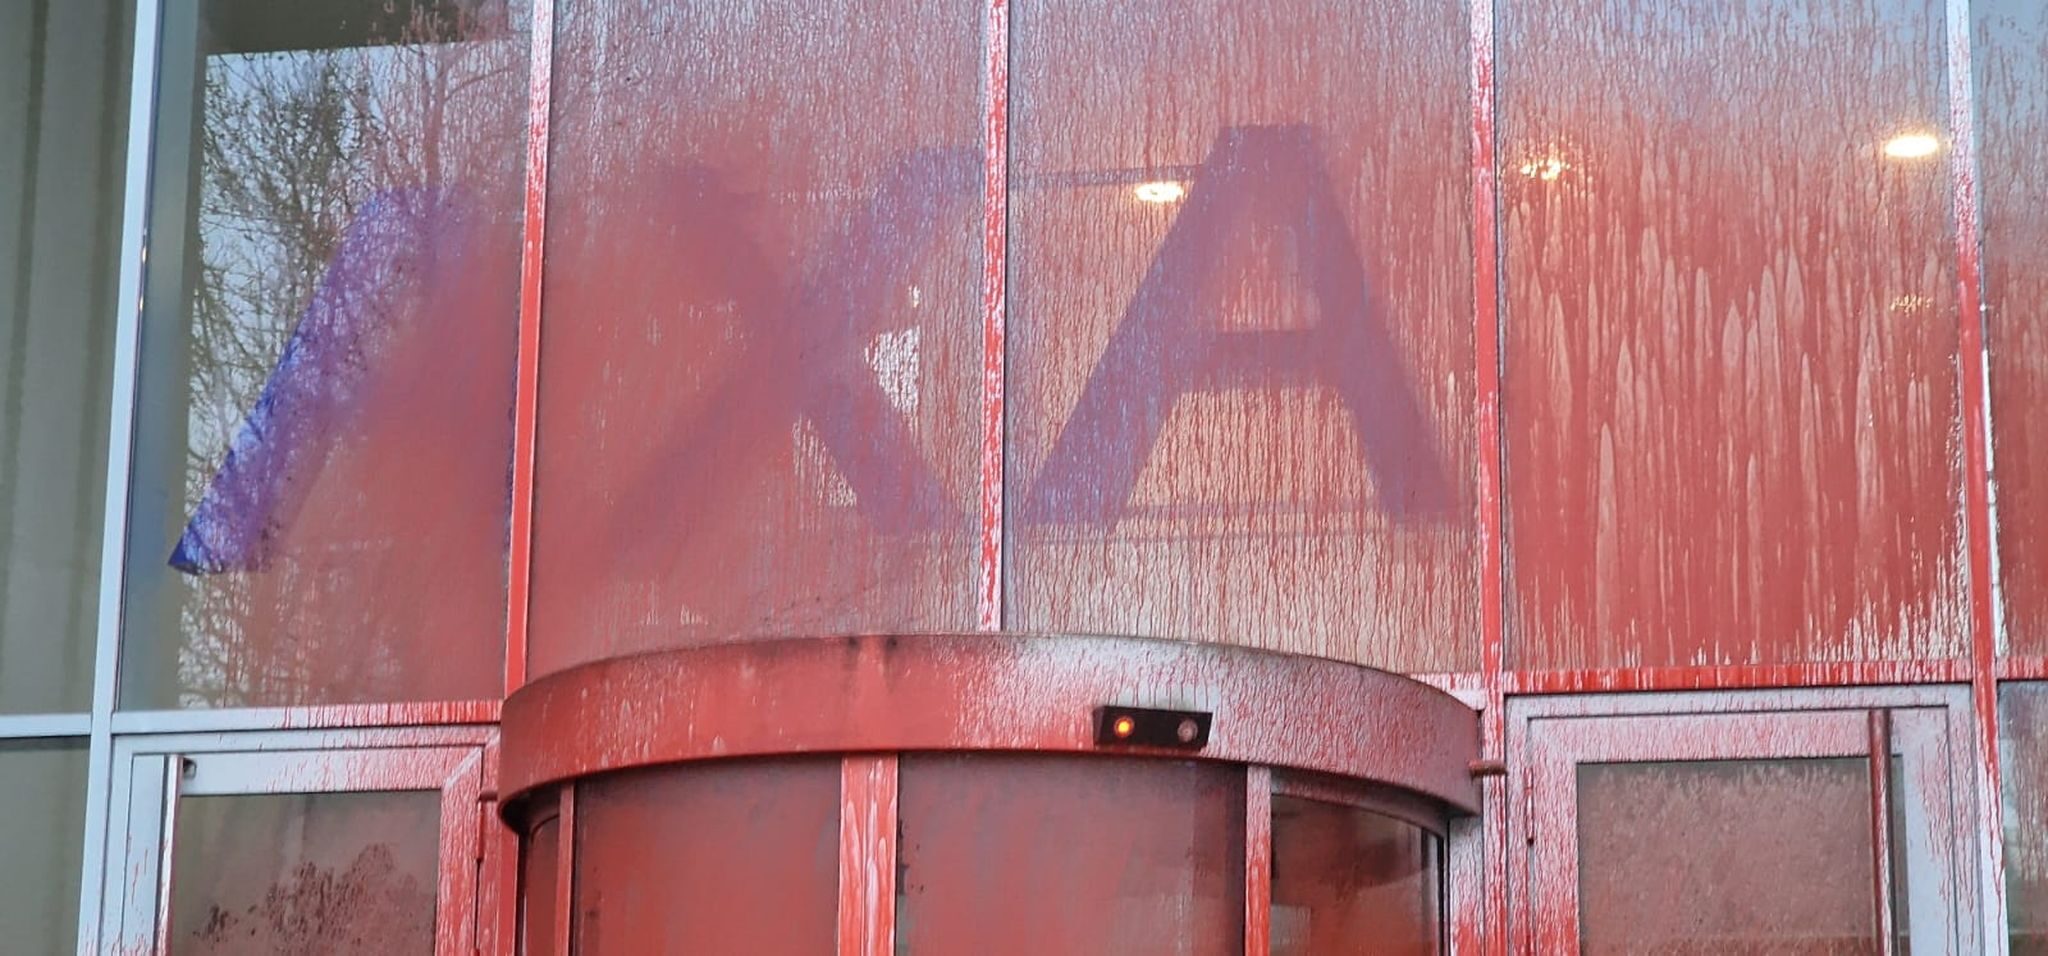 La façade d’Axa route du Rhin aspergée de faux sang